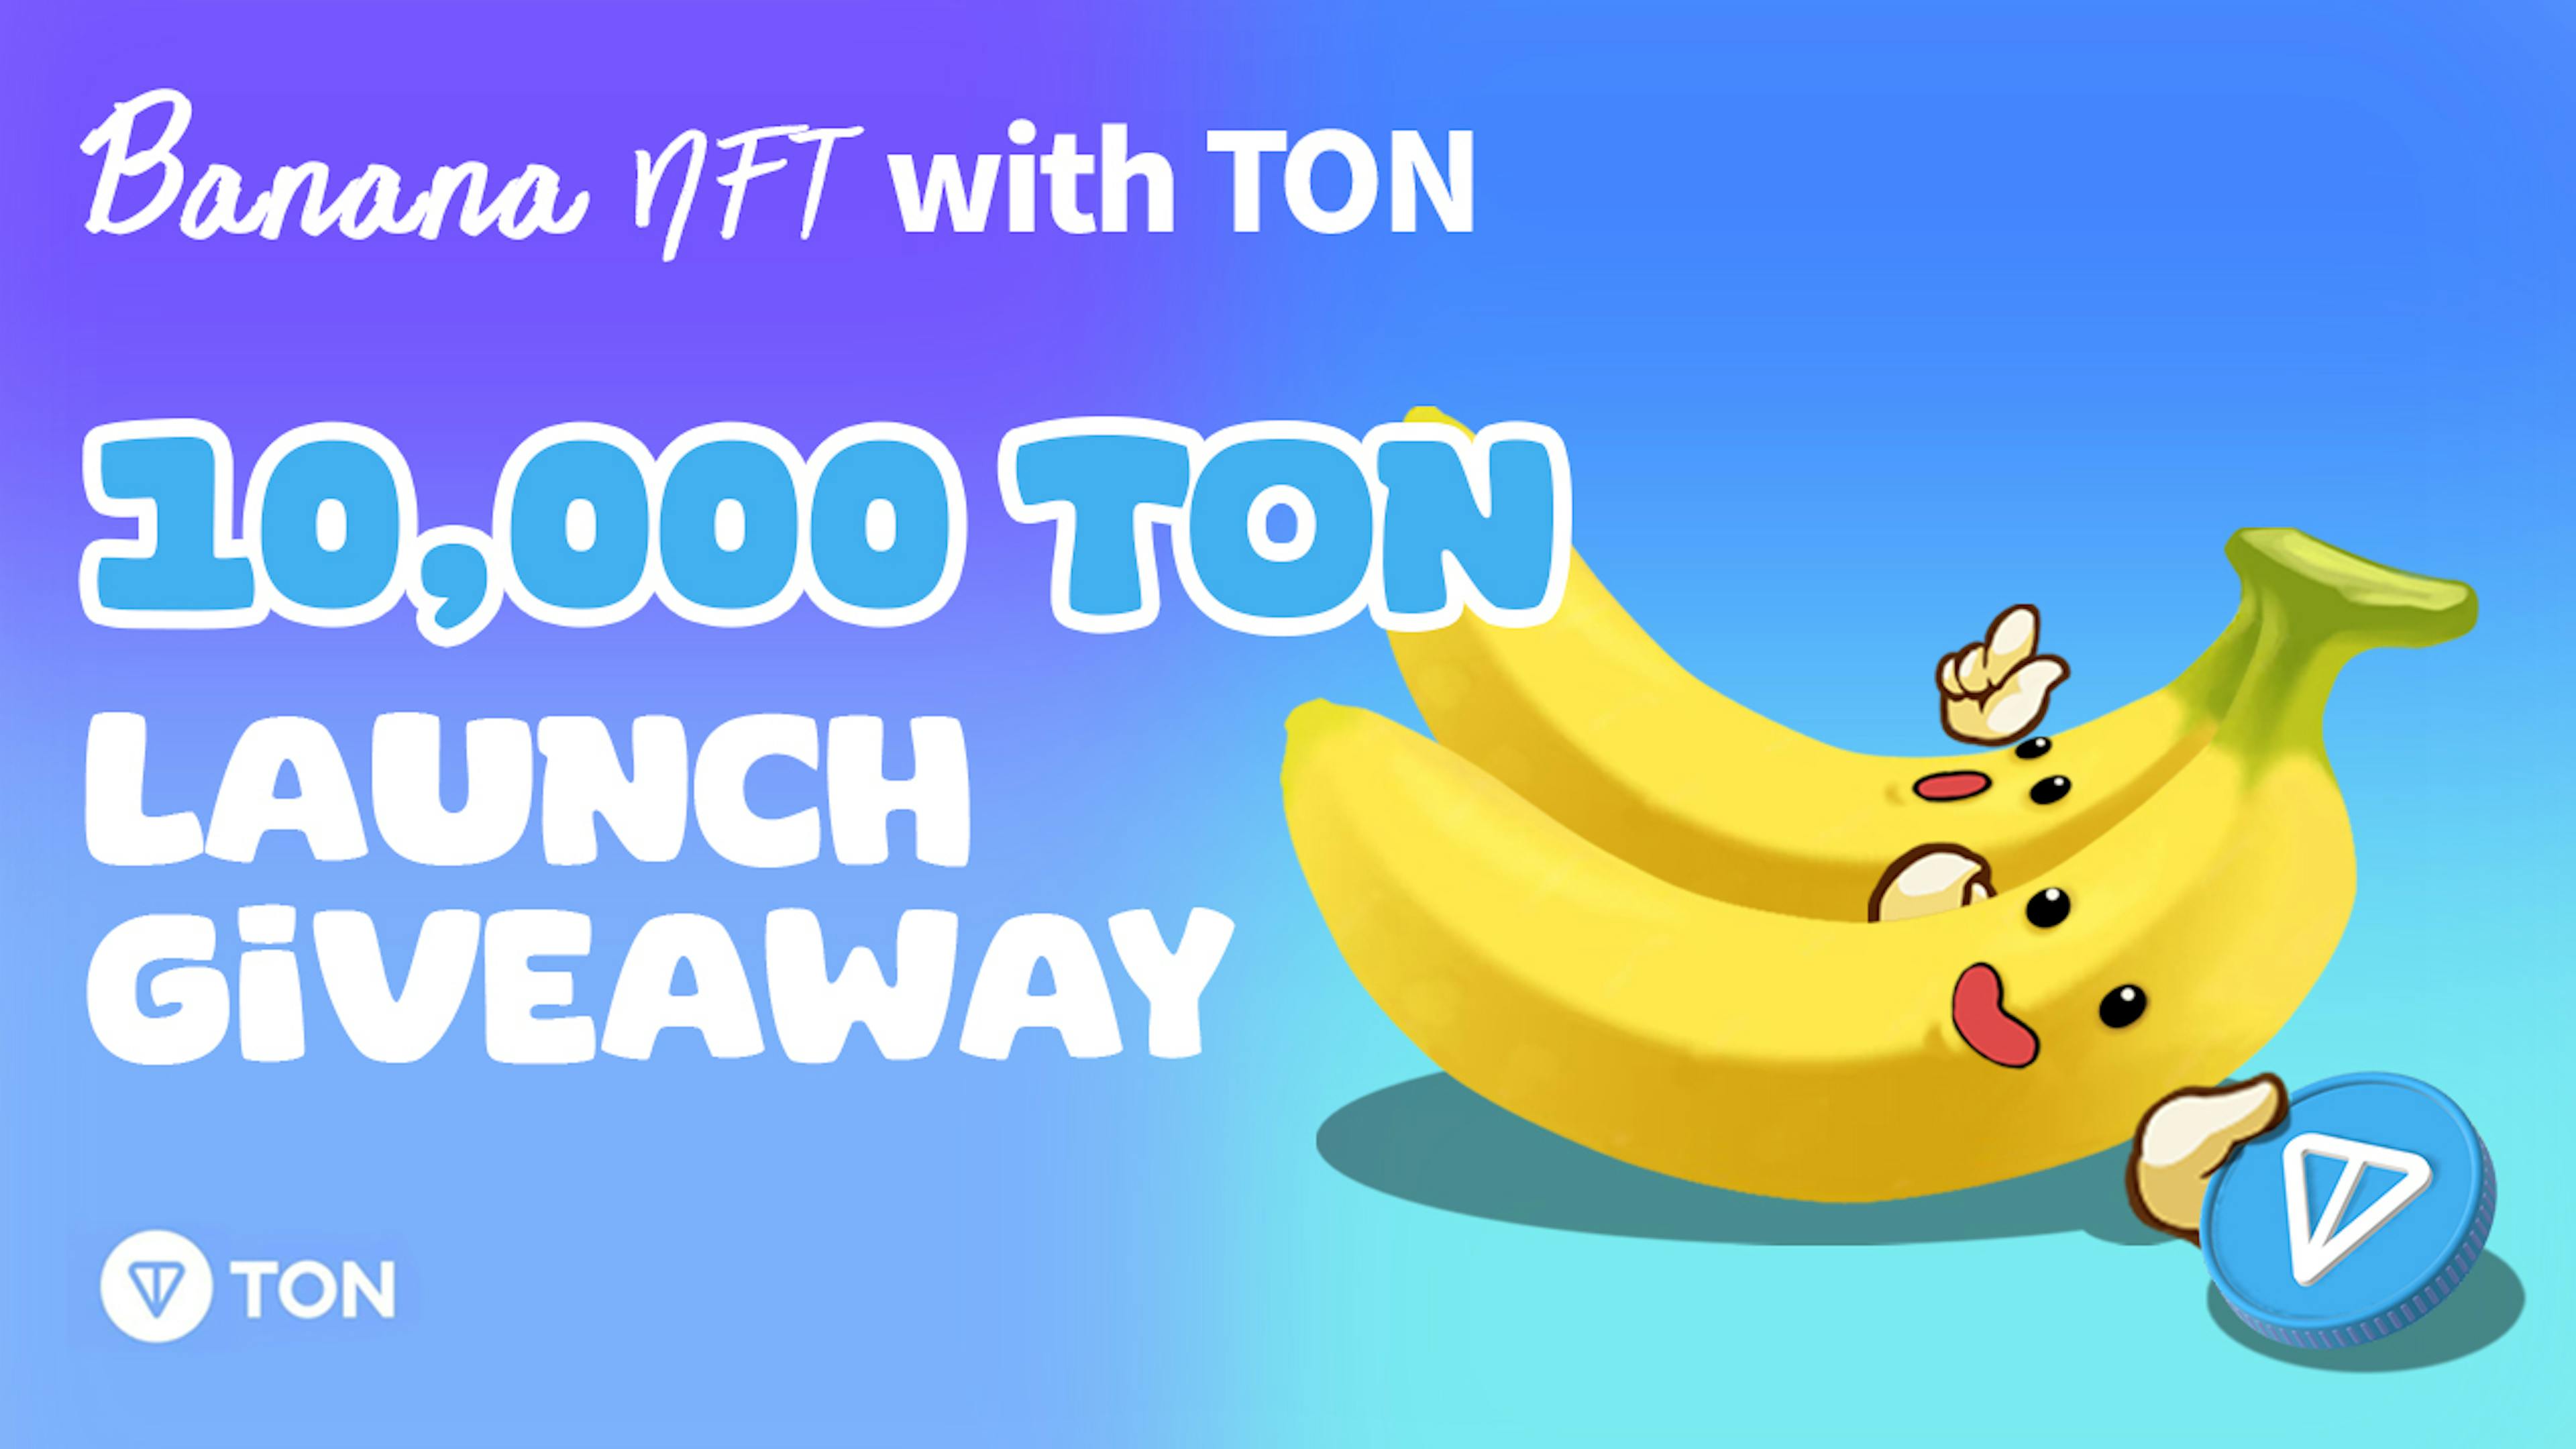 featured image - Banana NFT est lancé sur Telegram avec un événement cadeau de 10 000 $ TON